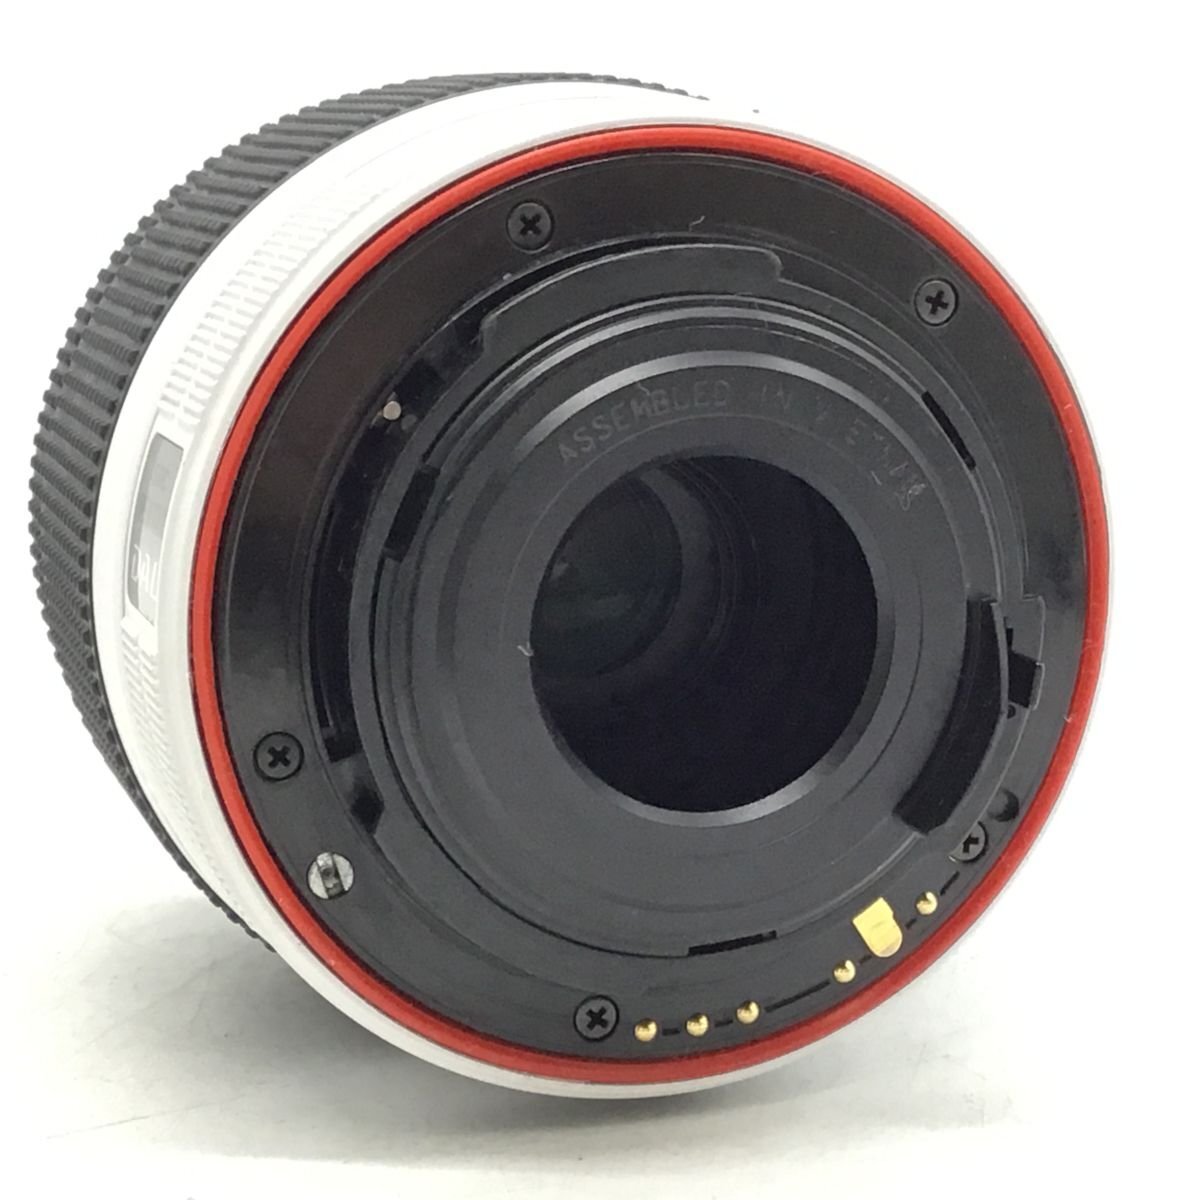 カメラ PENTAX K-50 / SMC PENTAX-DAL 18-55mm デジタル一眼レフ セット品 現状品 [1637HJ]の画像3